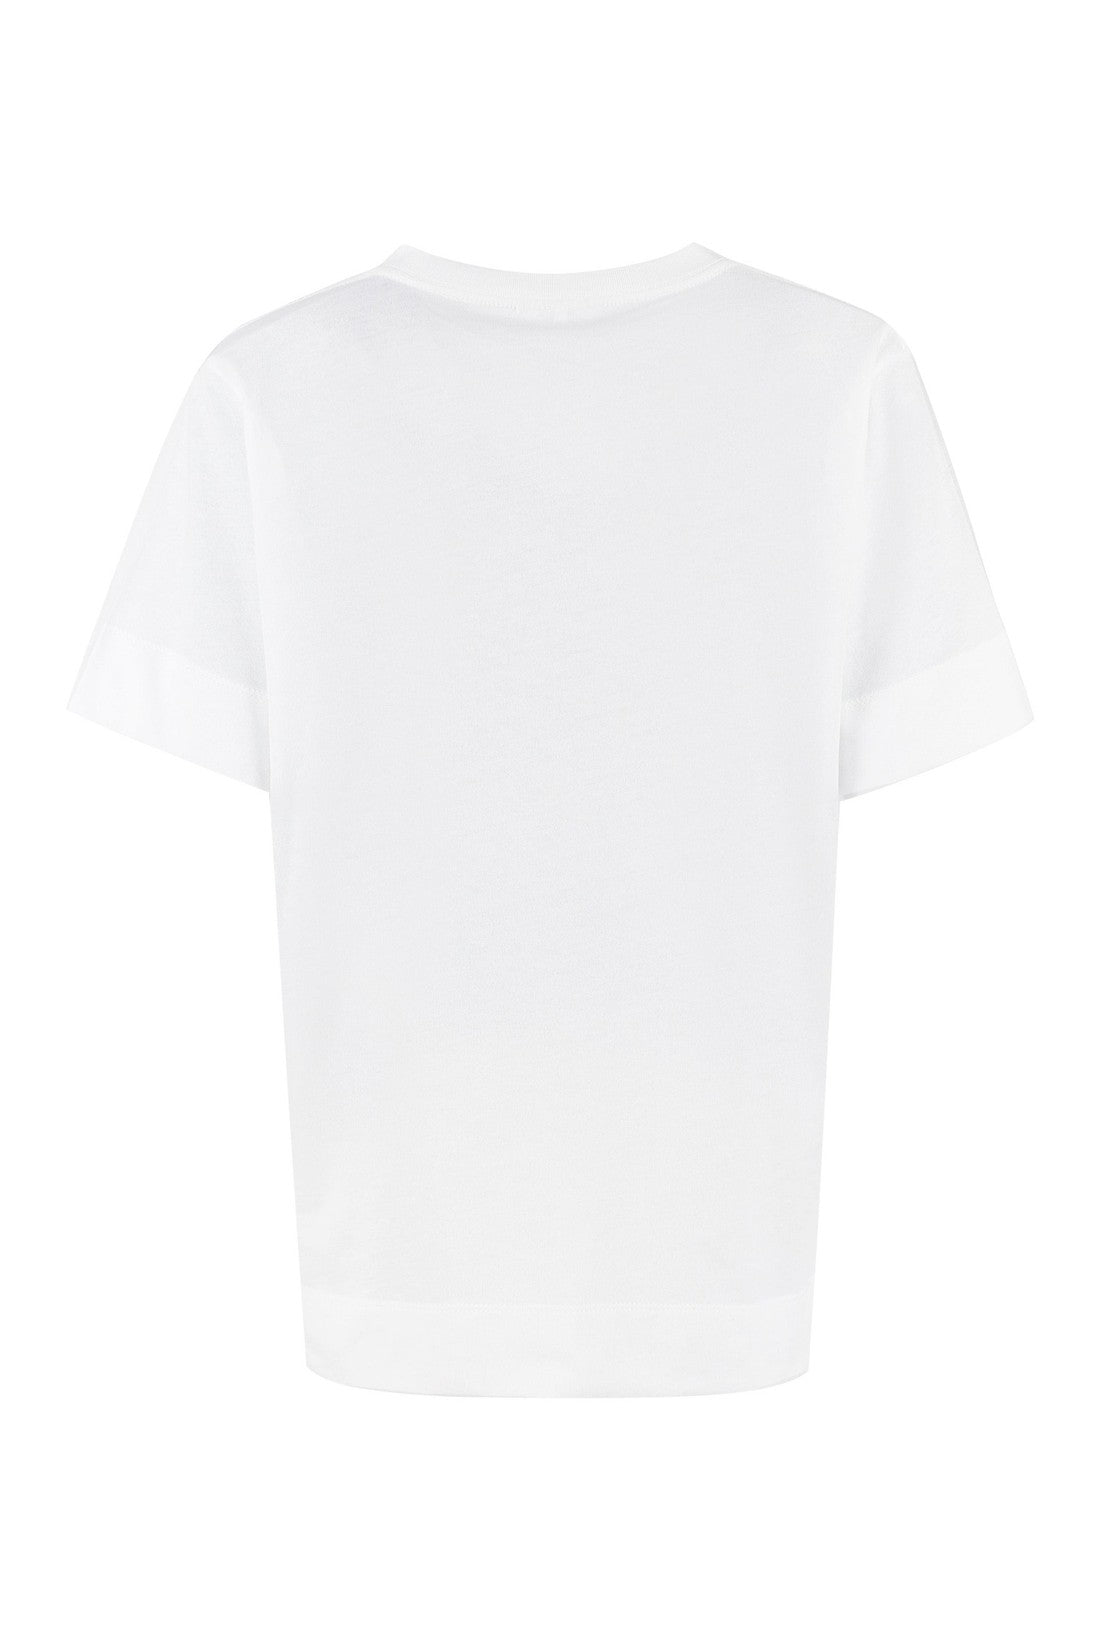 GANNI-OUTLET-SALE-Software logo print t-shirt-ARCHIVIST